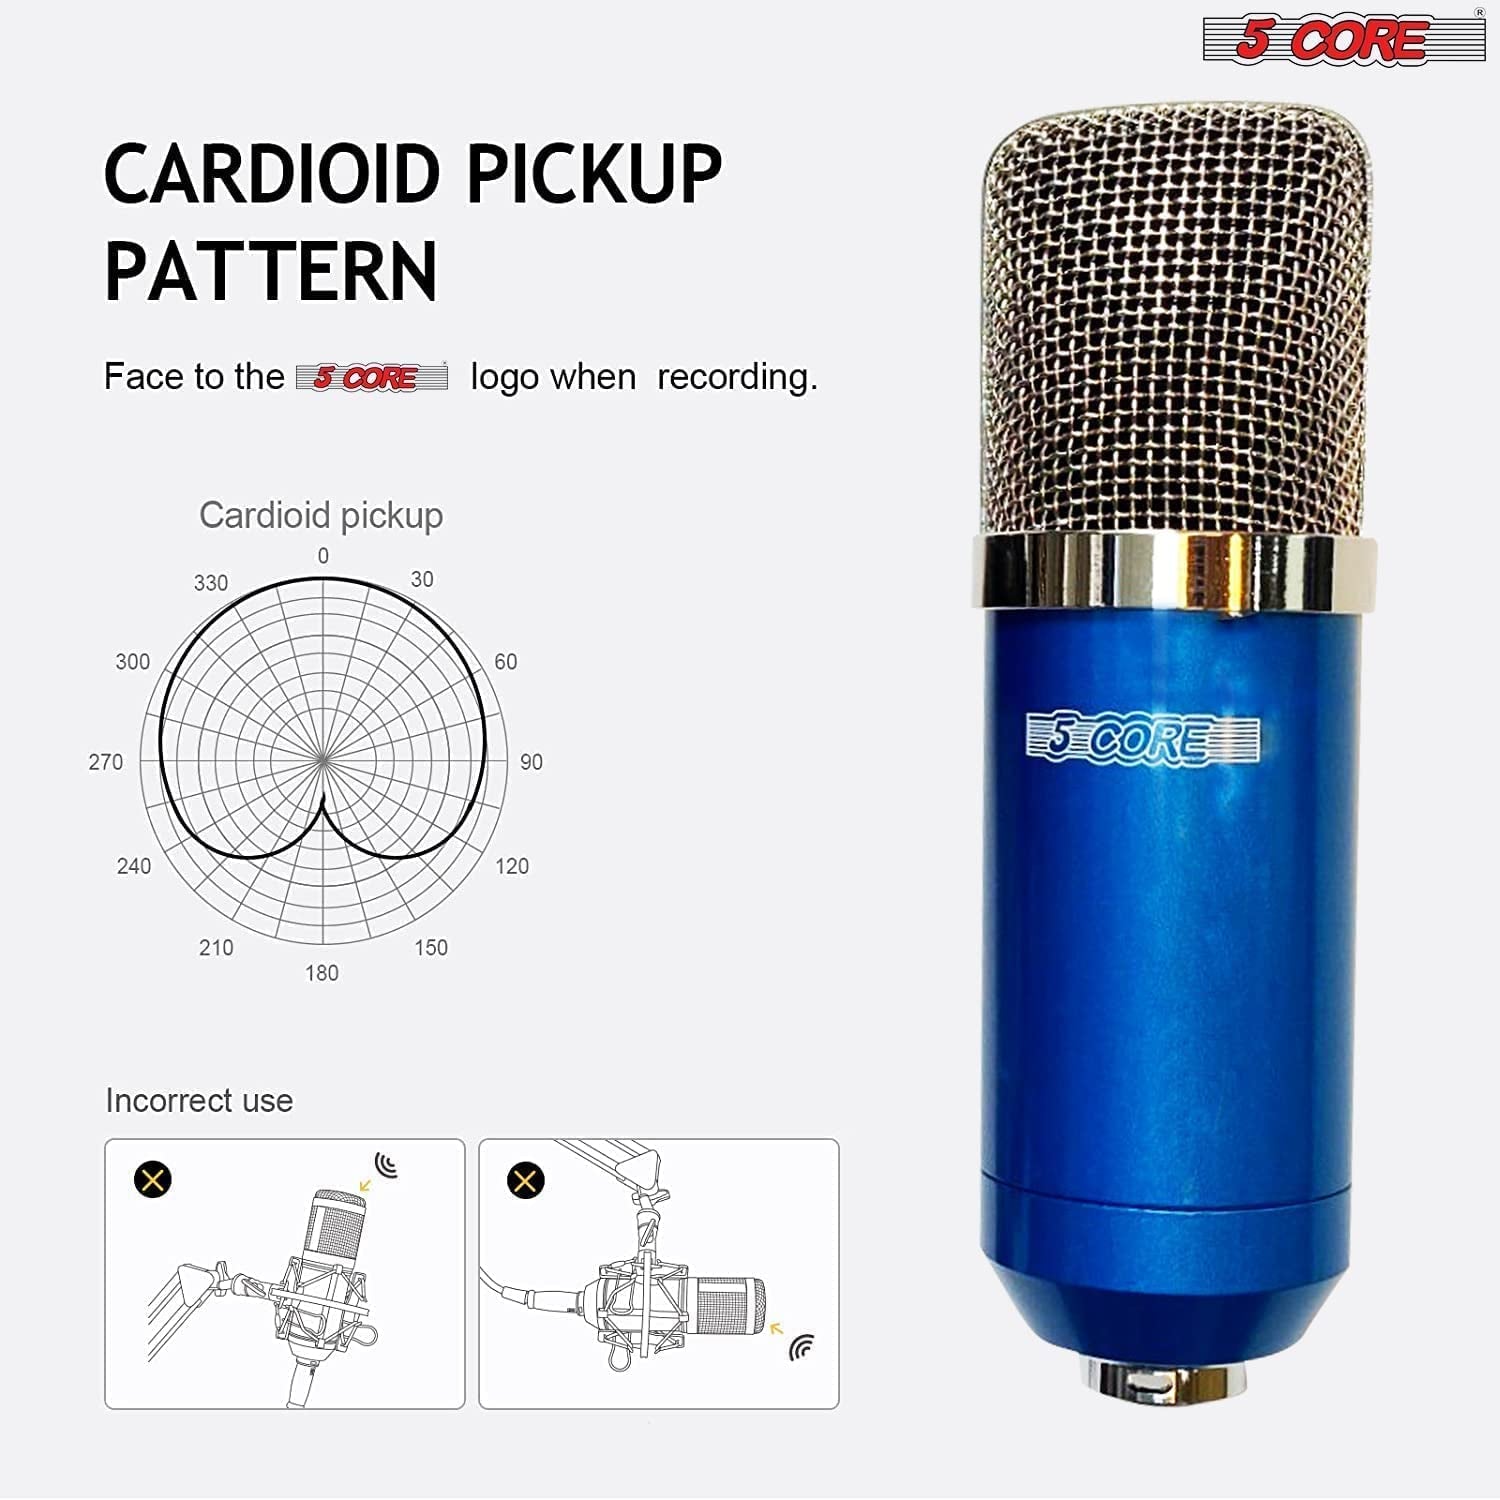 5 Core Studio Recording Kit Podcast Equipment Bundle Includes Recording Microphone Desk Arm Shock Mount Sponge XLR Cable Mini Tripod- RM 7 BLU